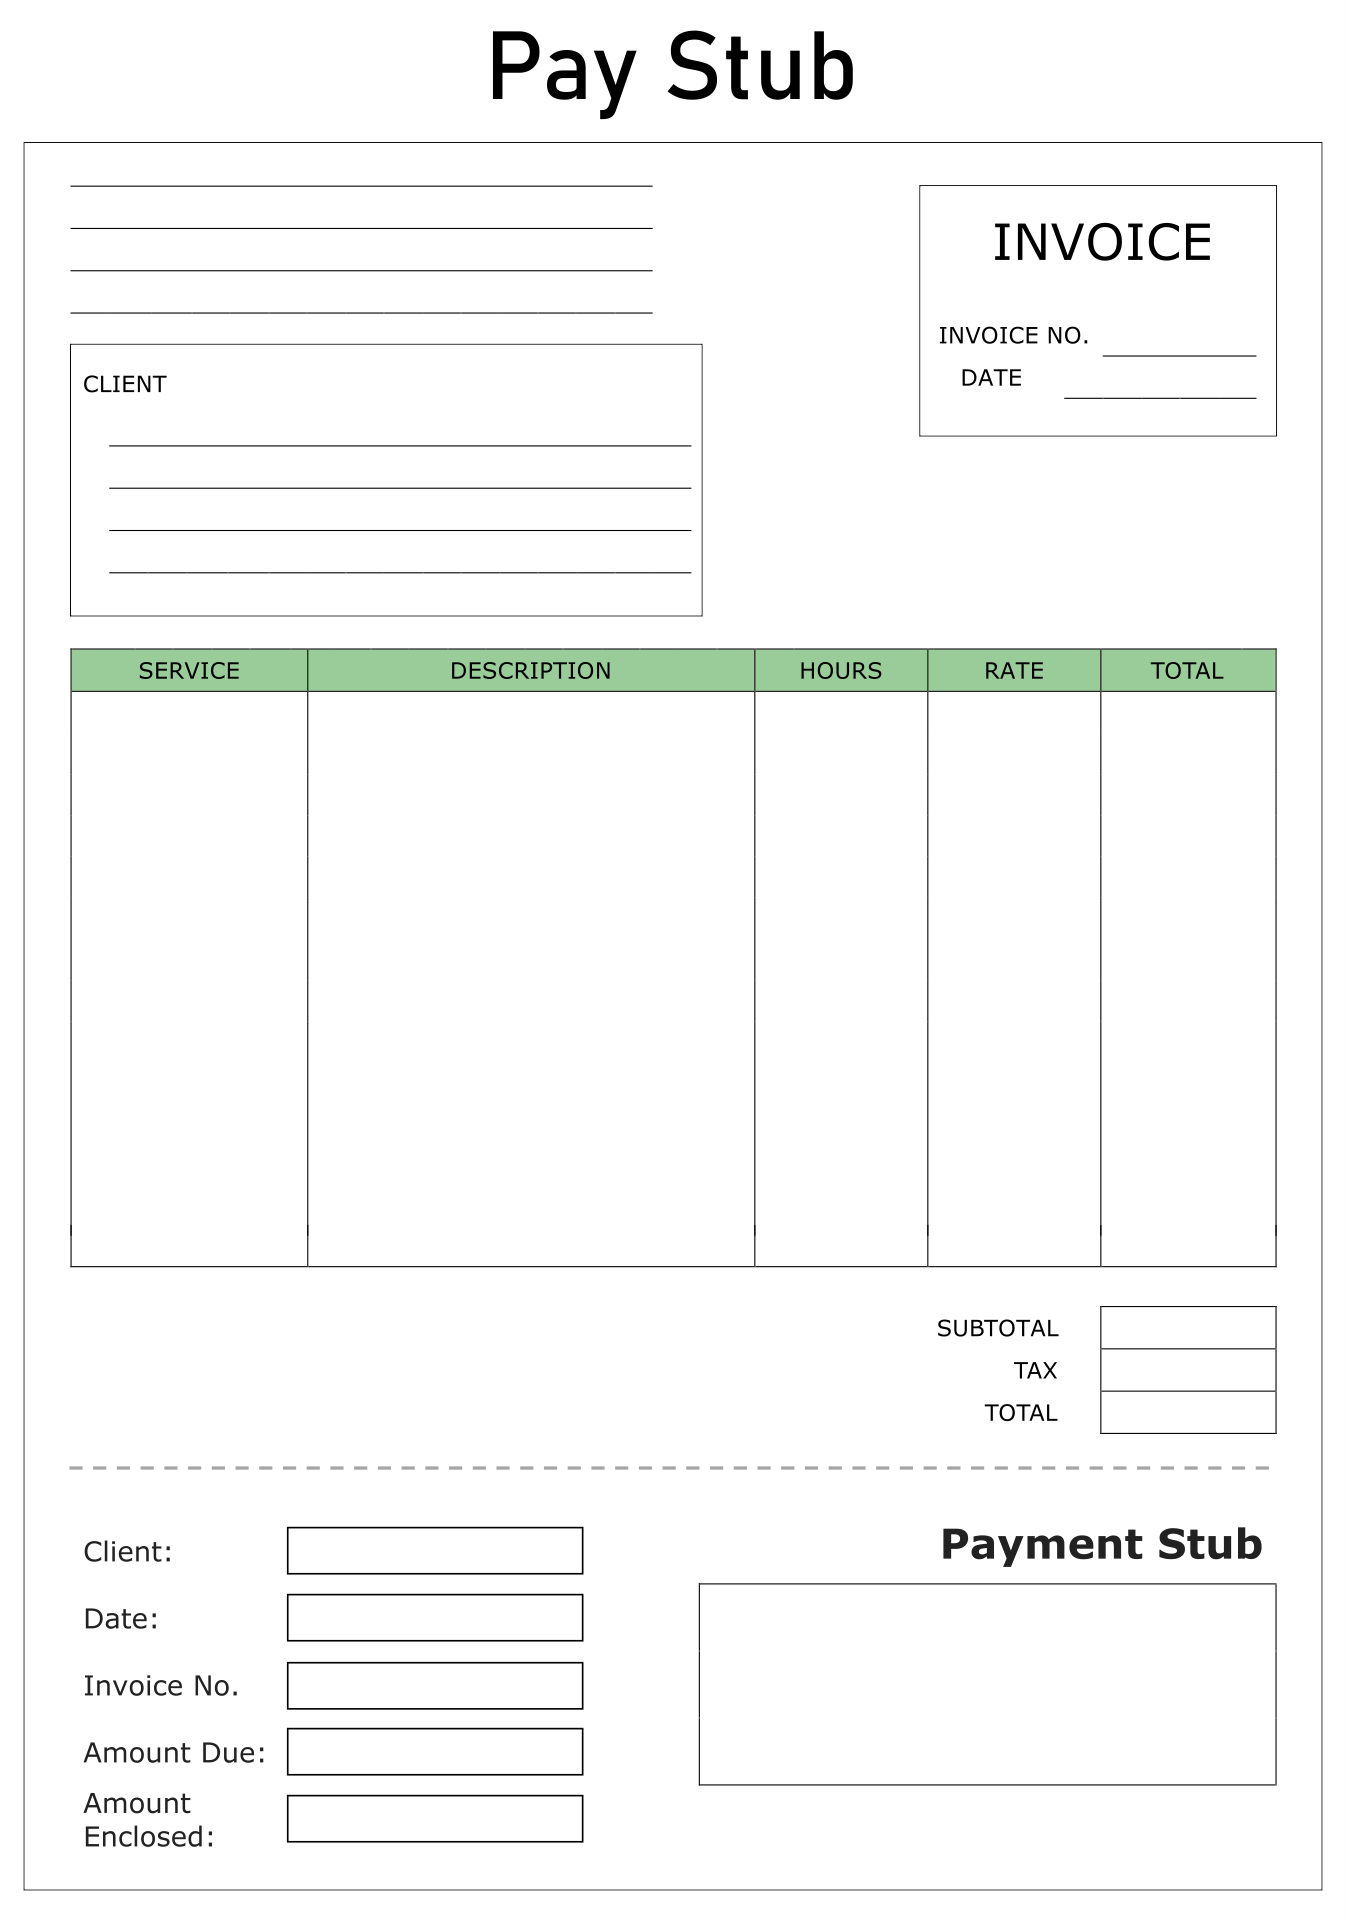 Printable Blank Payroll Check Template Free Payroll Template Payroll Checks Templates - Free Printable Blank Check Stubs